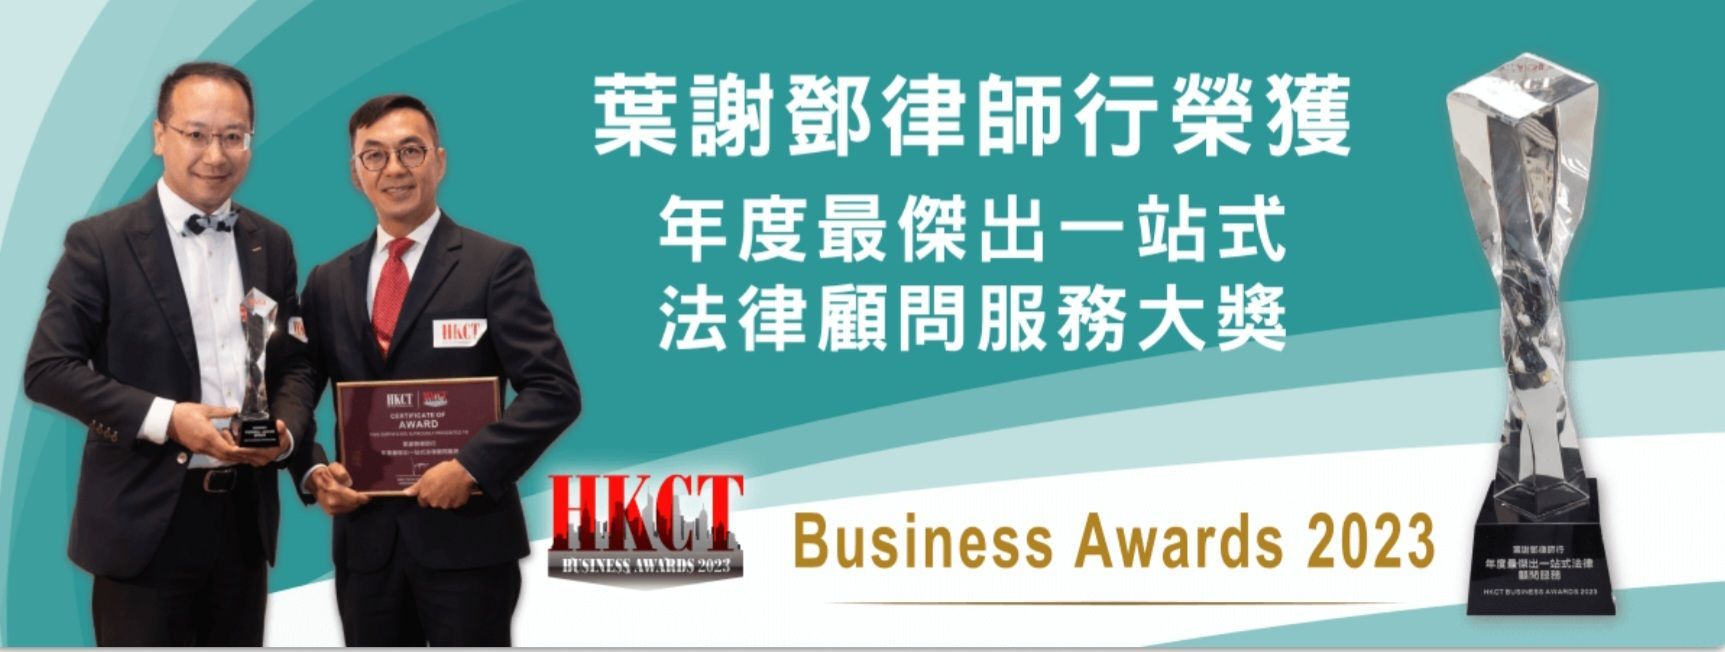 葉謝鄧律師行榮獲《年度最傑出一站式法律顧問服務大獎》,孫楚雍律師和謝連輝律師公司合夥人接受獎項。